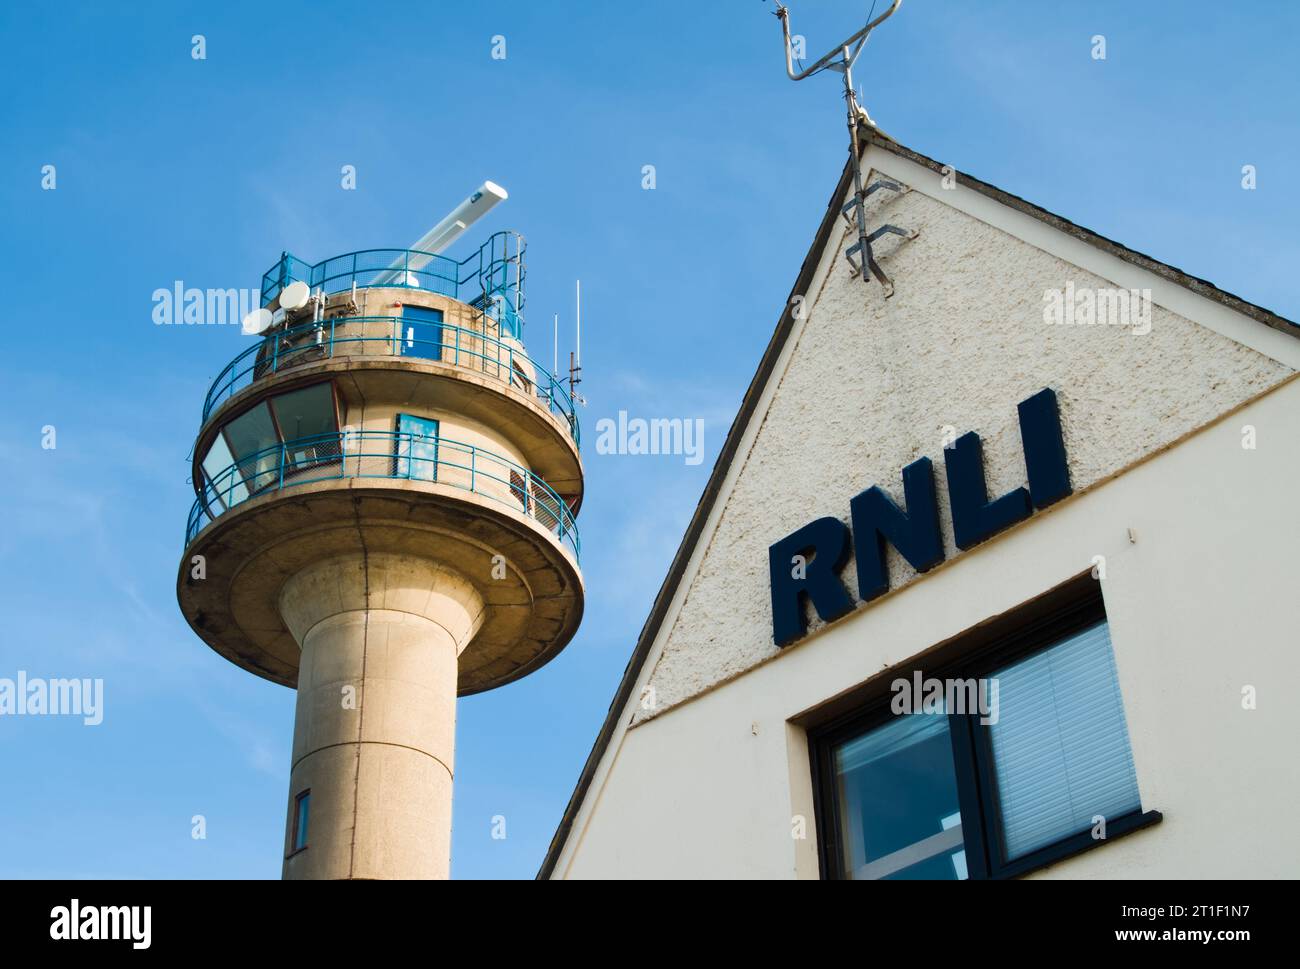 RNLI Lifeboat Station avec la tour de surveillance en béton NCI Coastguard sur Calshot Spit, Royaume-Uni Banque D'Images